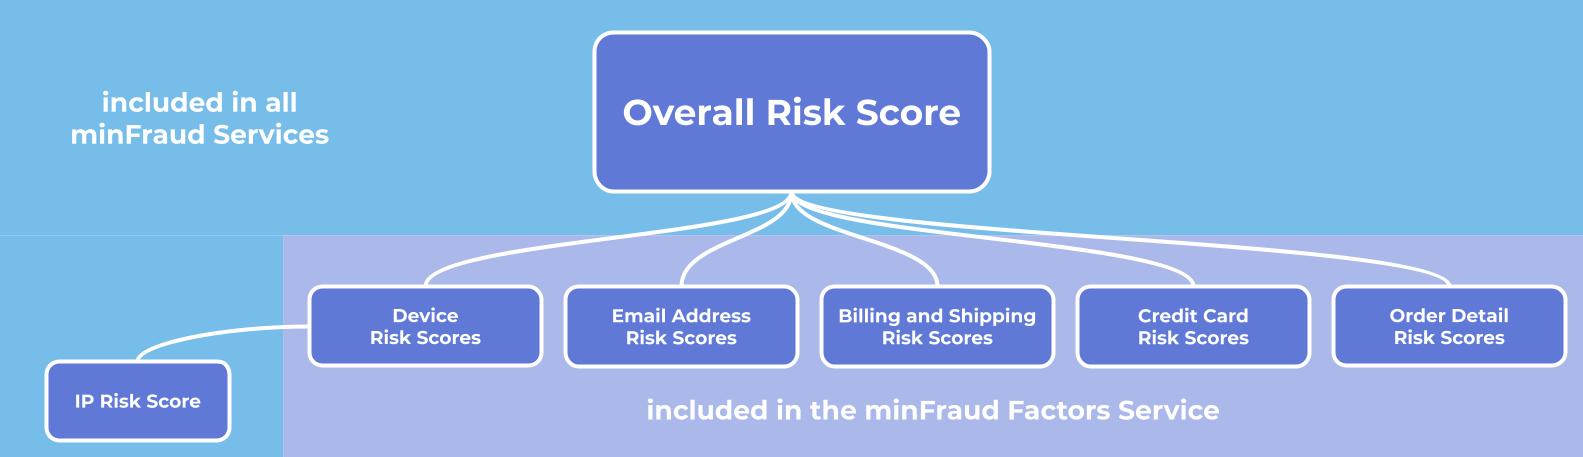 Risk_Scores.jpg